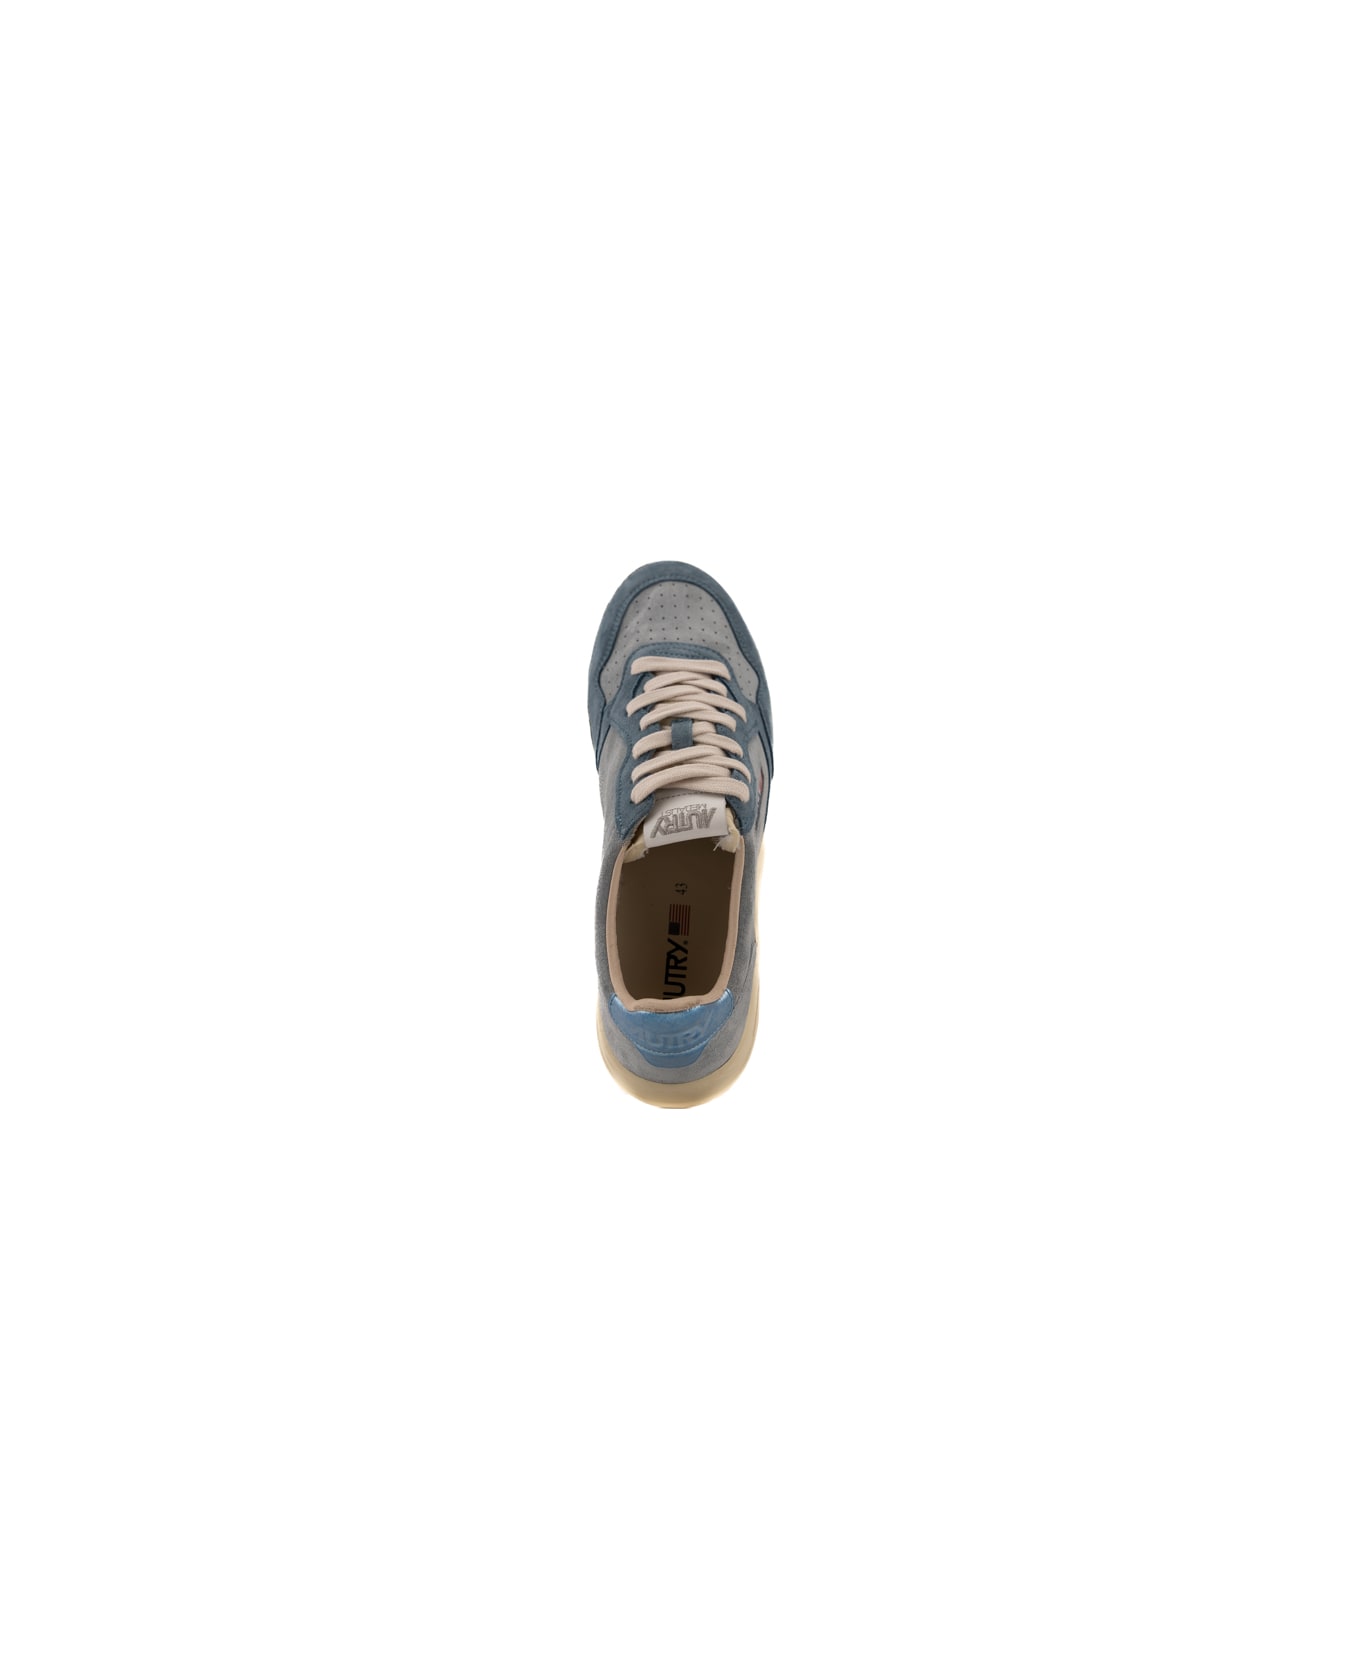 Autry Medialist Low Sneakers In Gray Suede - Clear/street